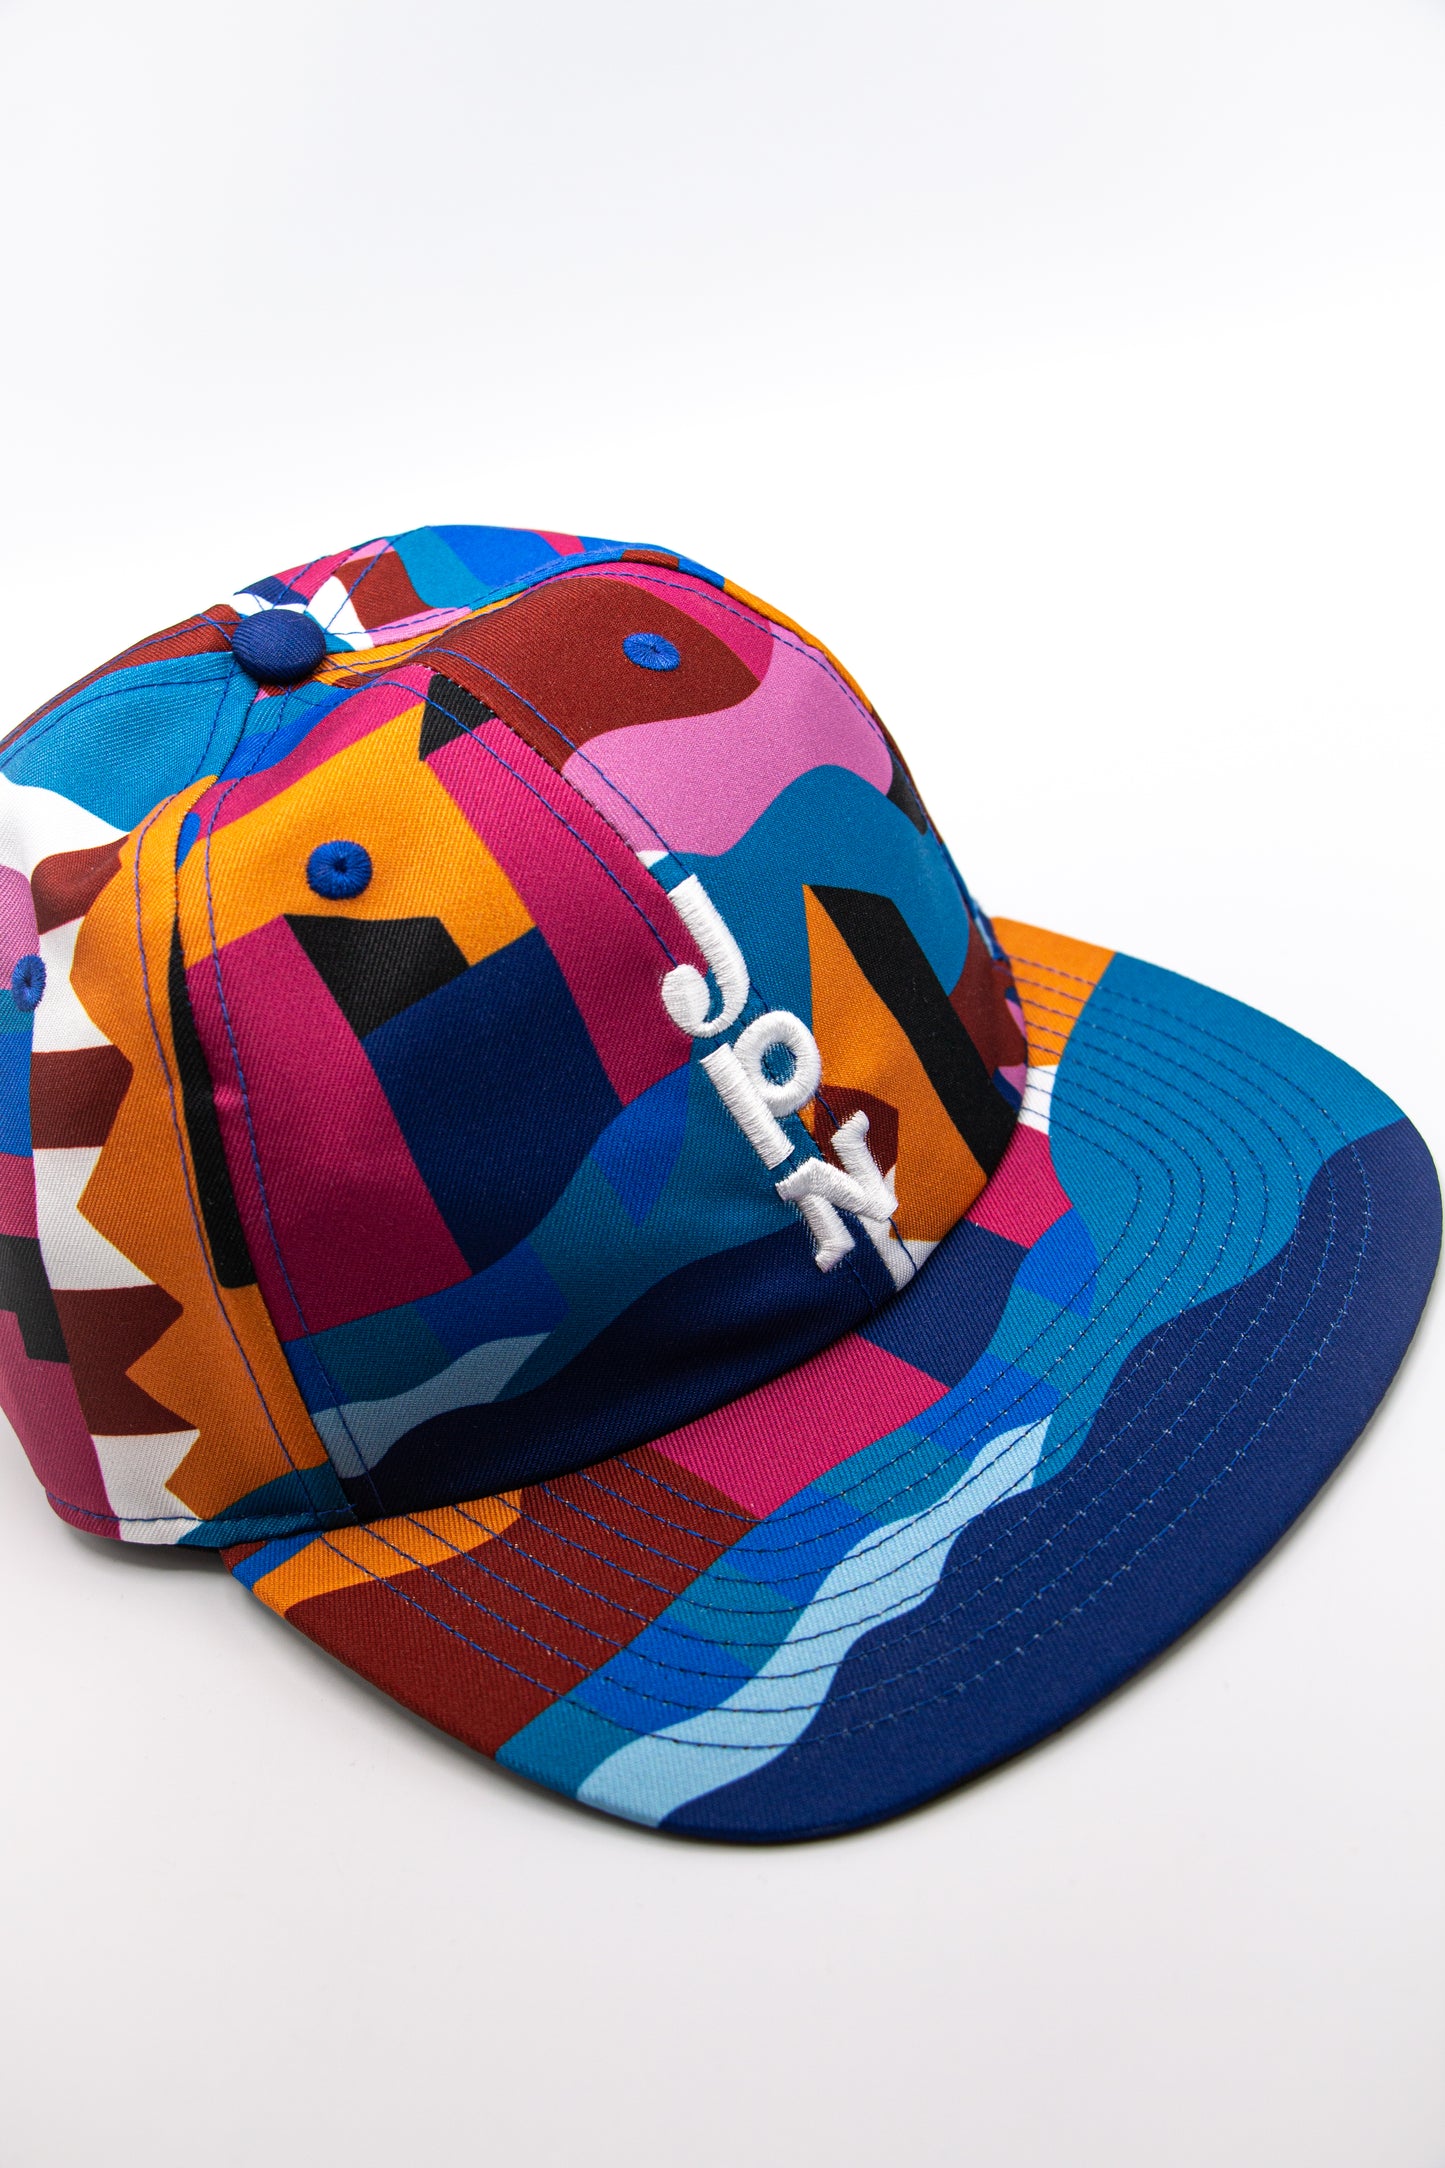 Nike x Parra Hat